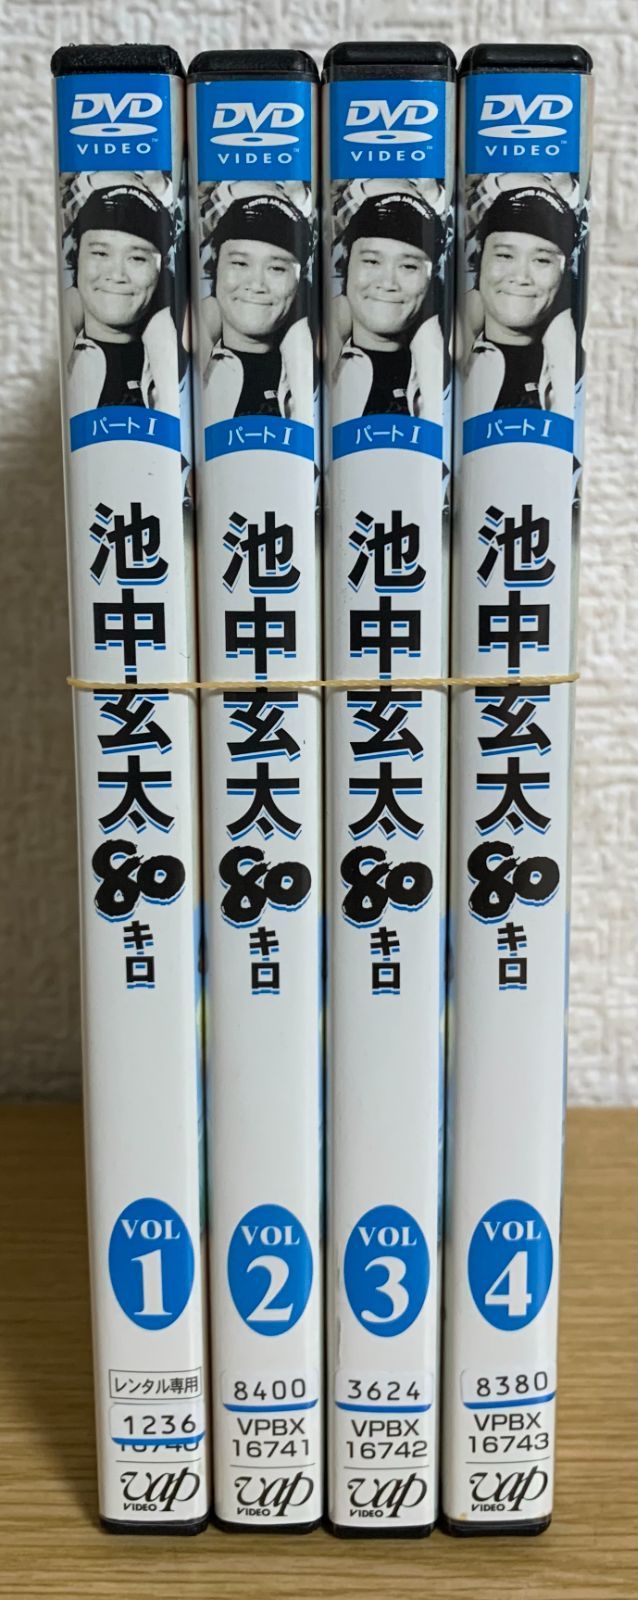 池中玄太80キロ DVD全巻セット - ☆新世界ストア☆ メルカリ店 - メルカリ